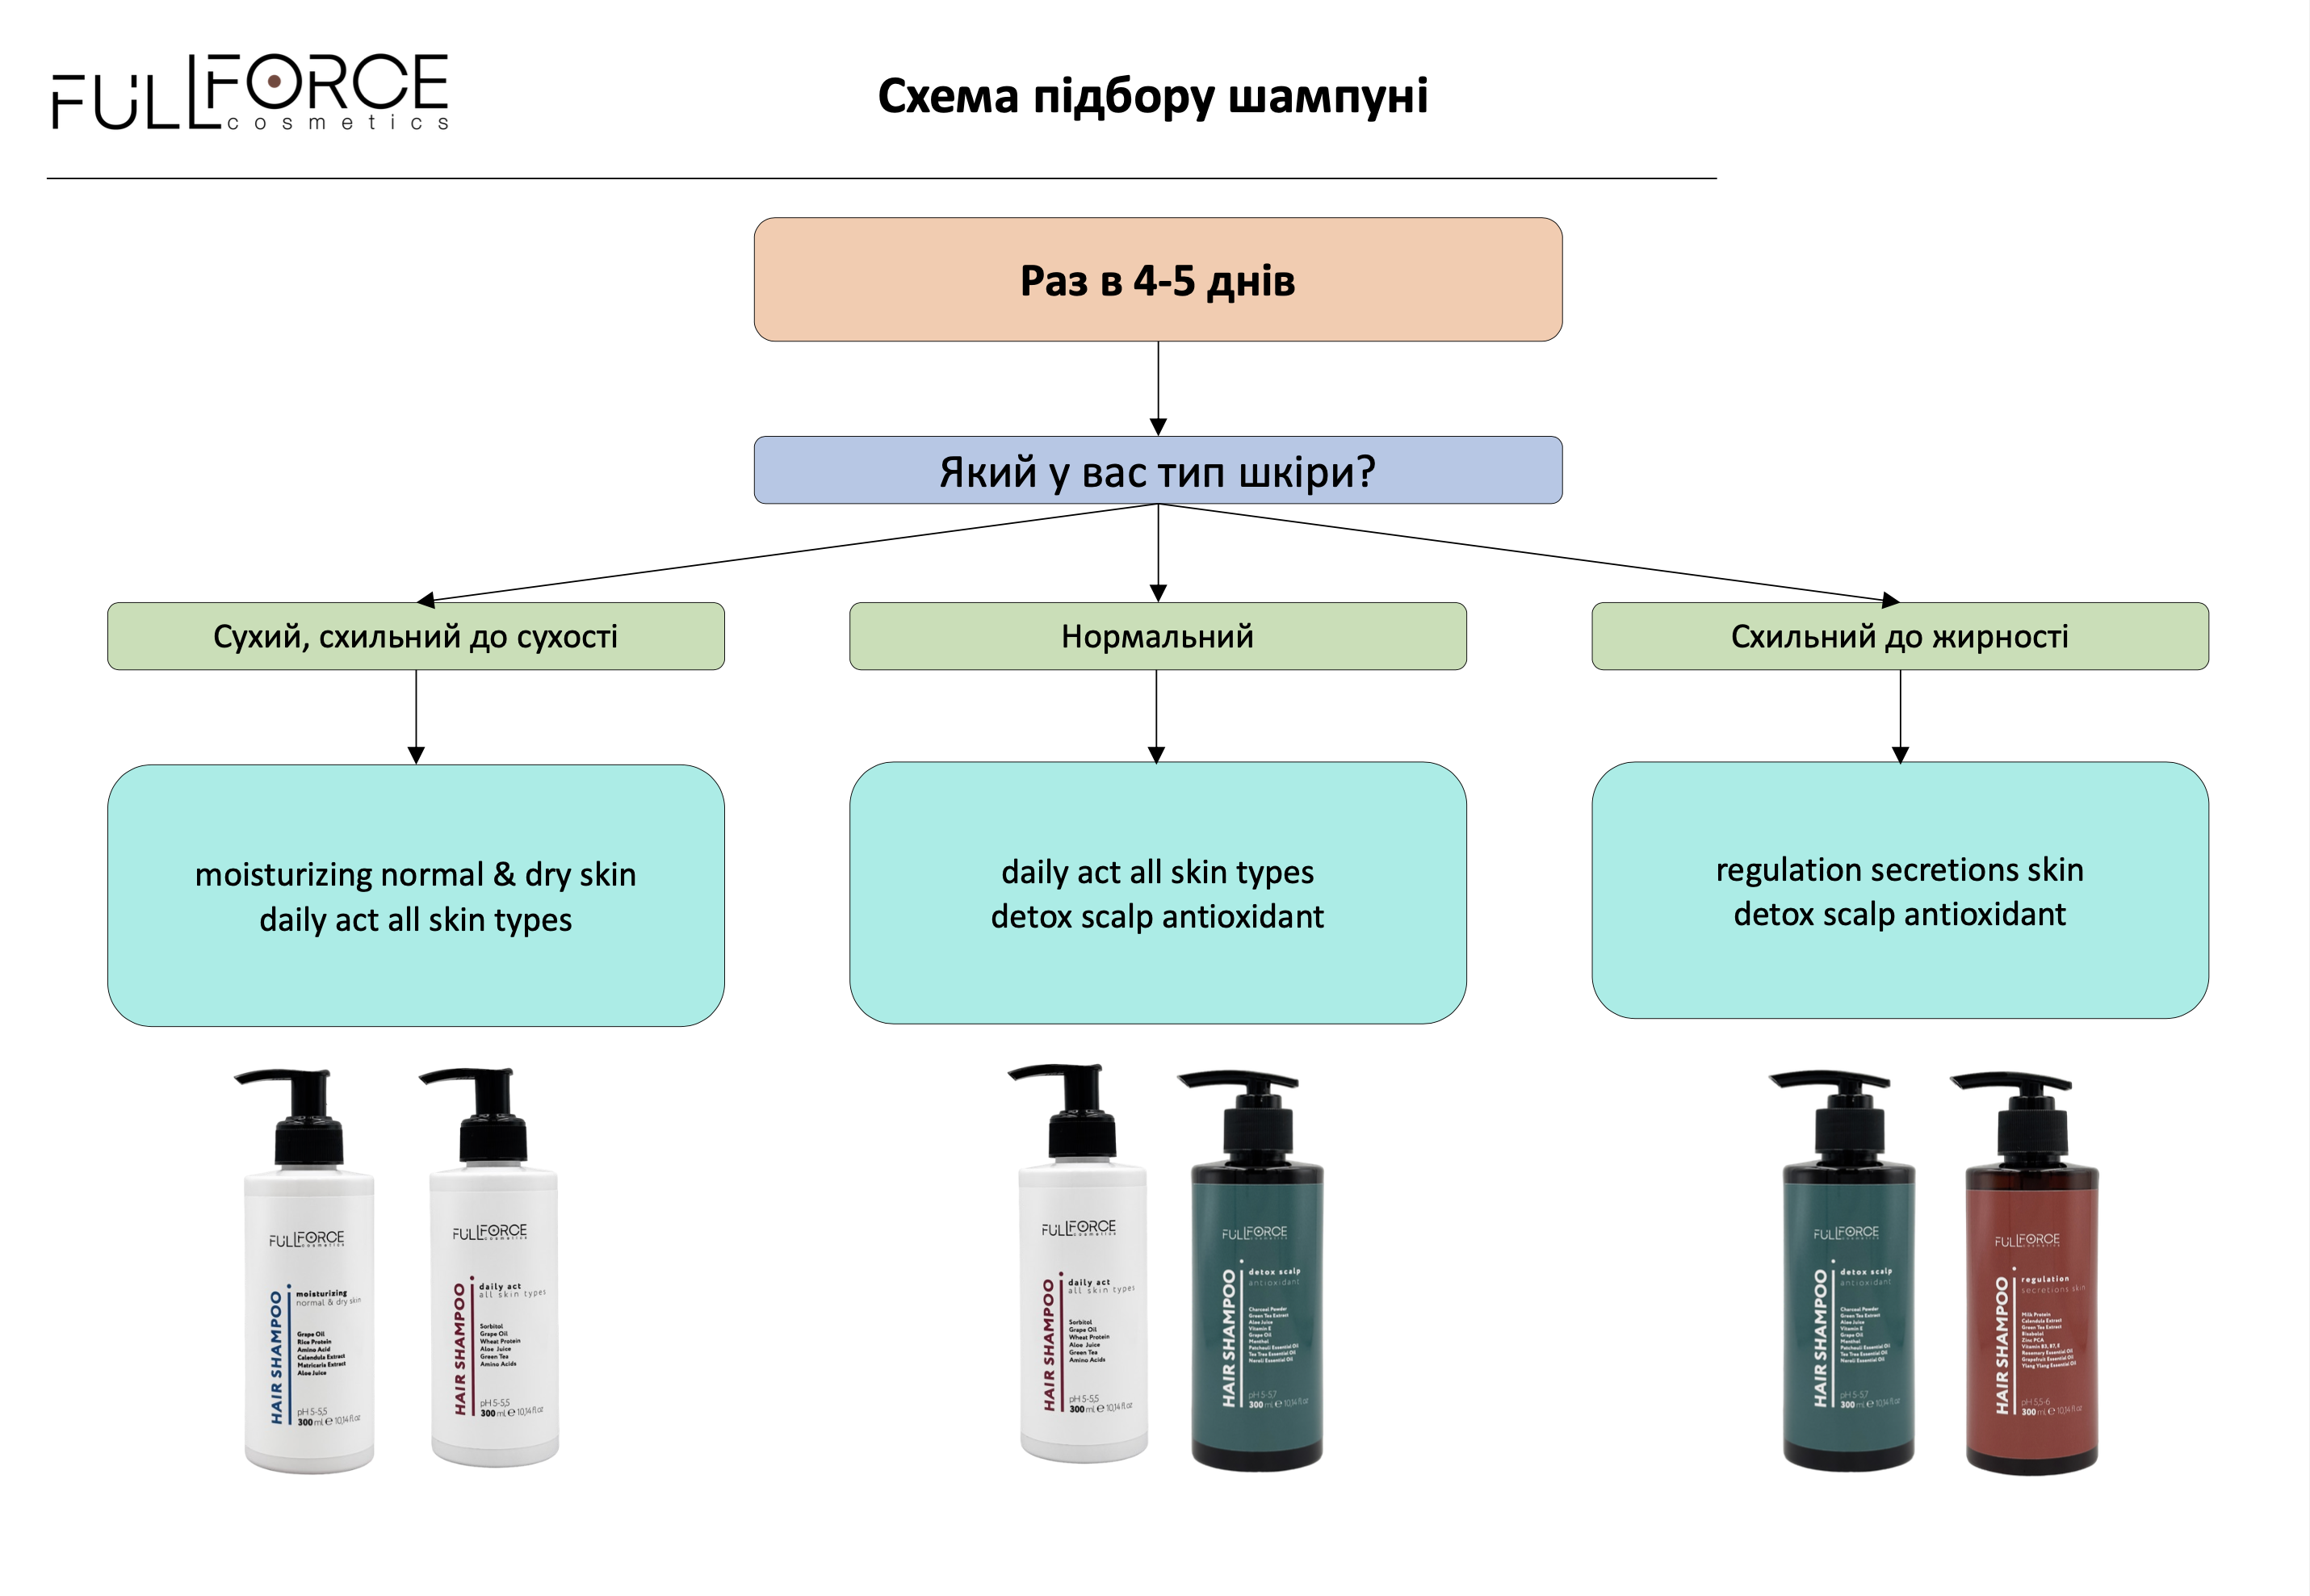 Схема підбору шампуні Full Force Cosmetics